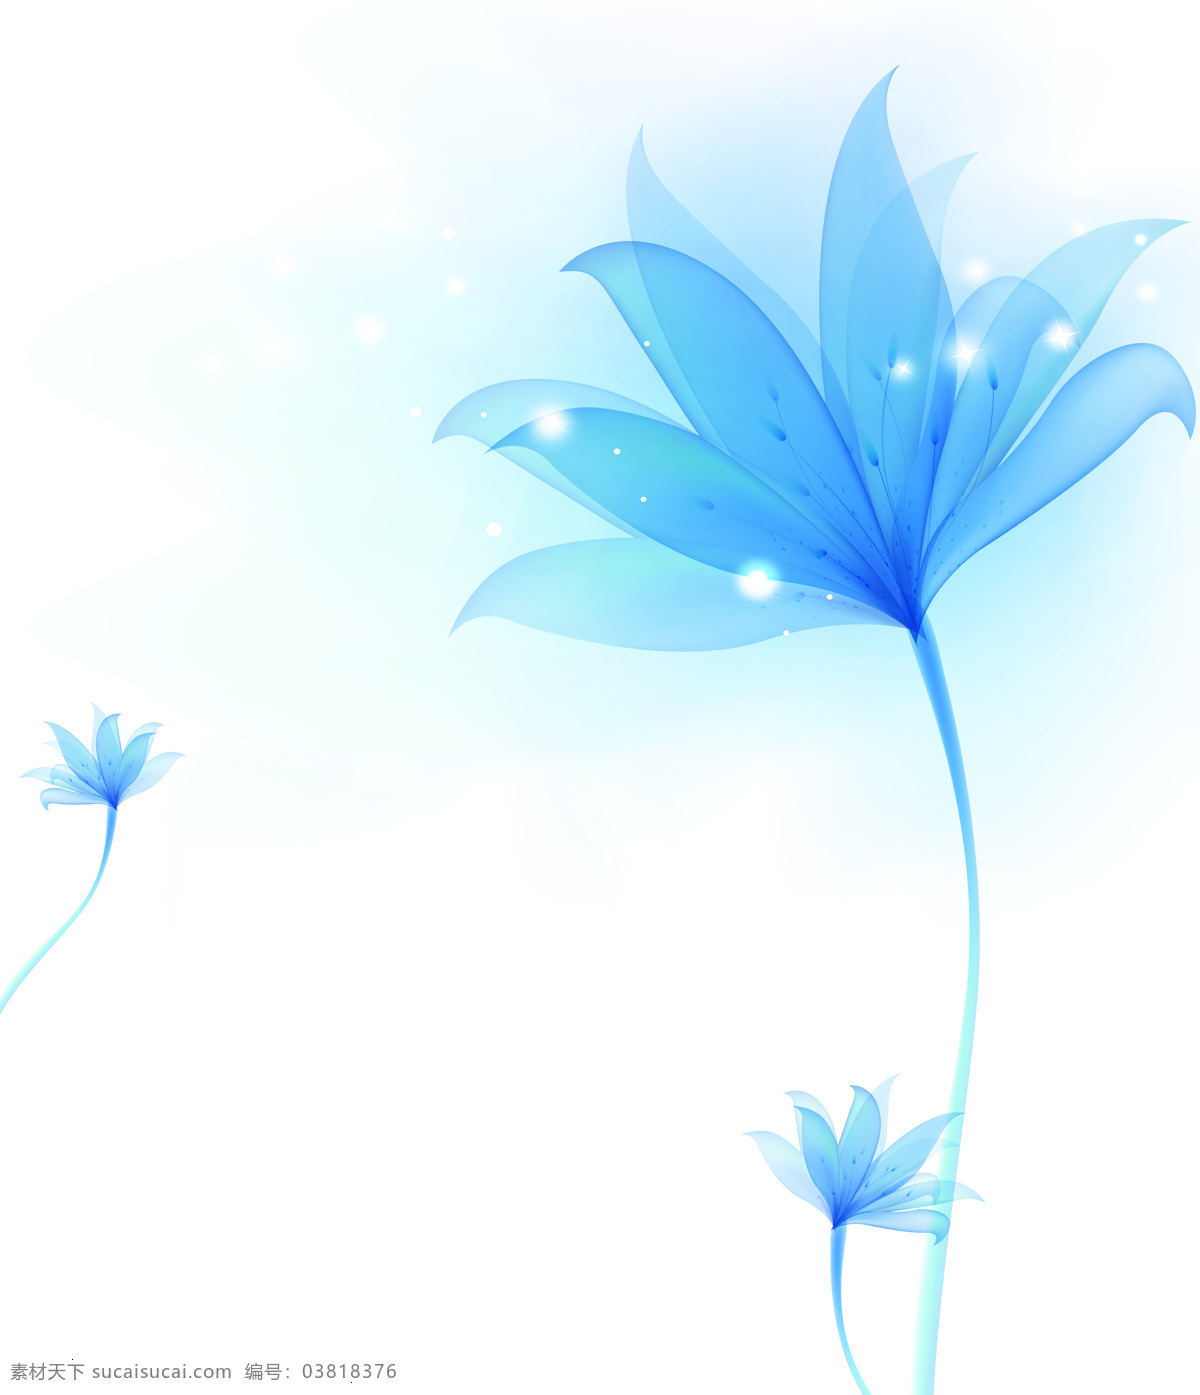 一枝独秀 装饰画 花朵 蓝色 创意 个性